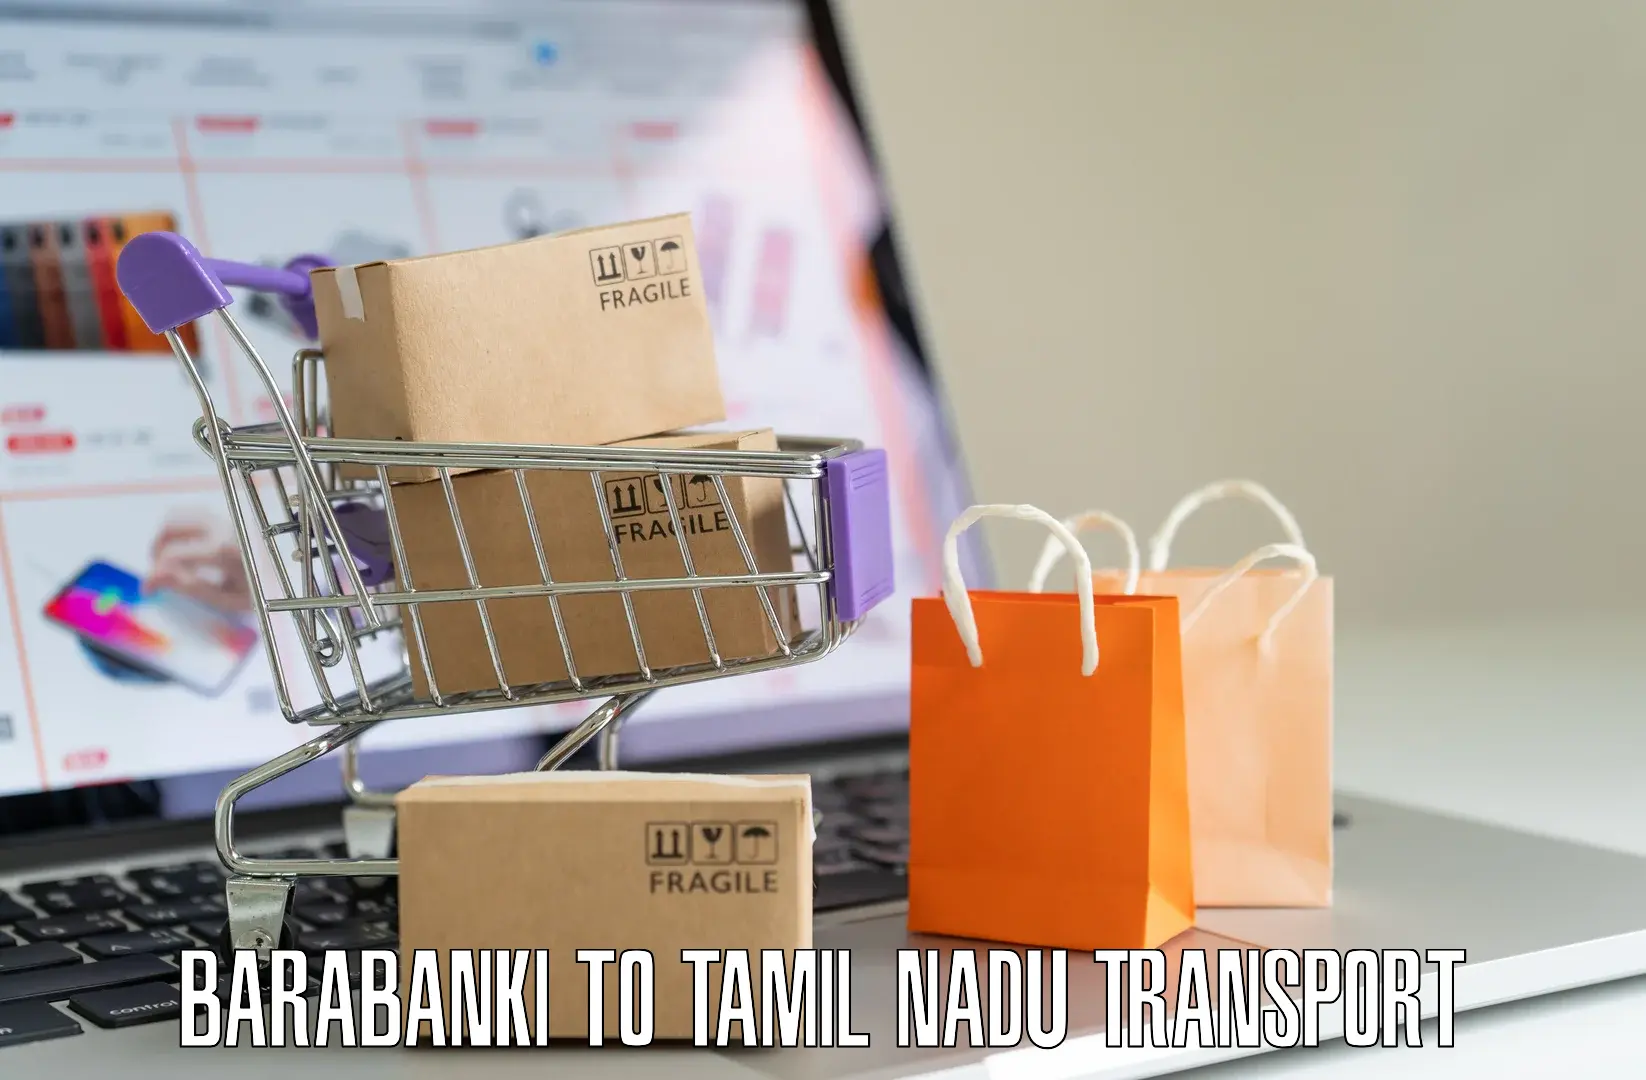 All India transport service Barabanki to Tiruturaipundi